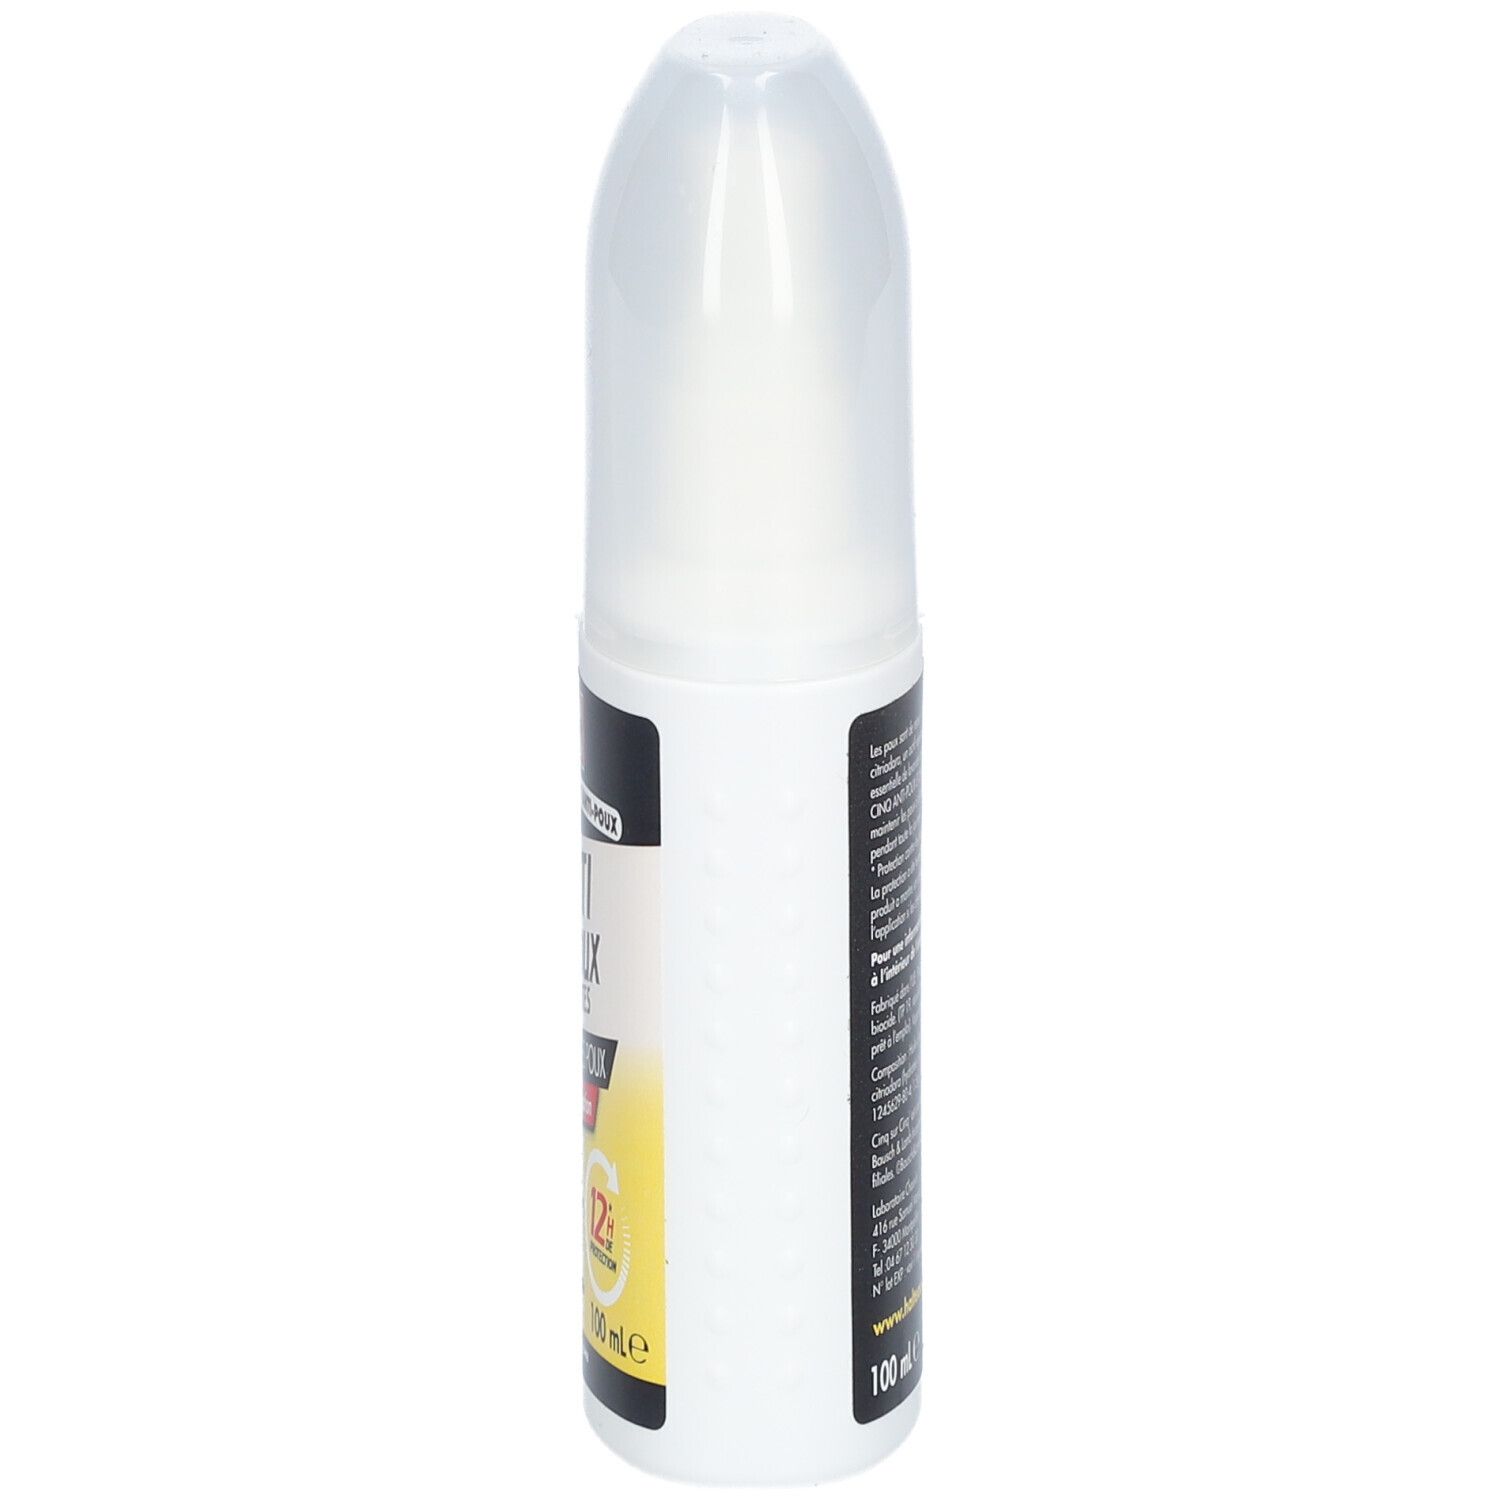 CINQ SUR CINQ anti-poux spray répulsif 100ml